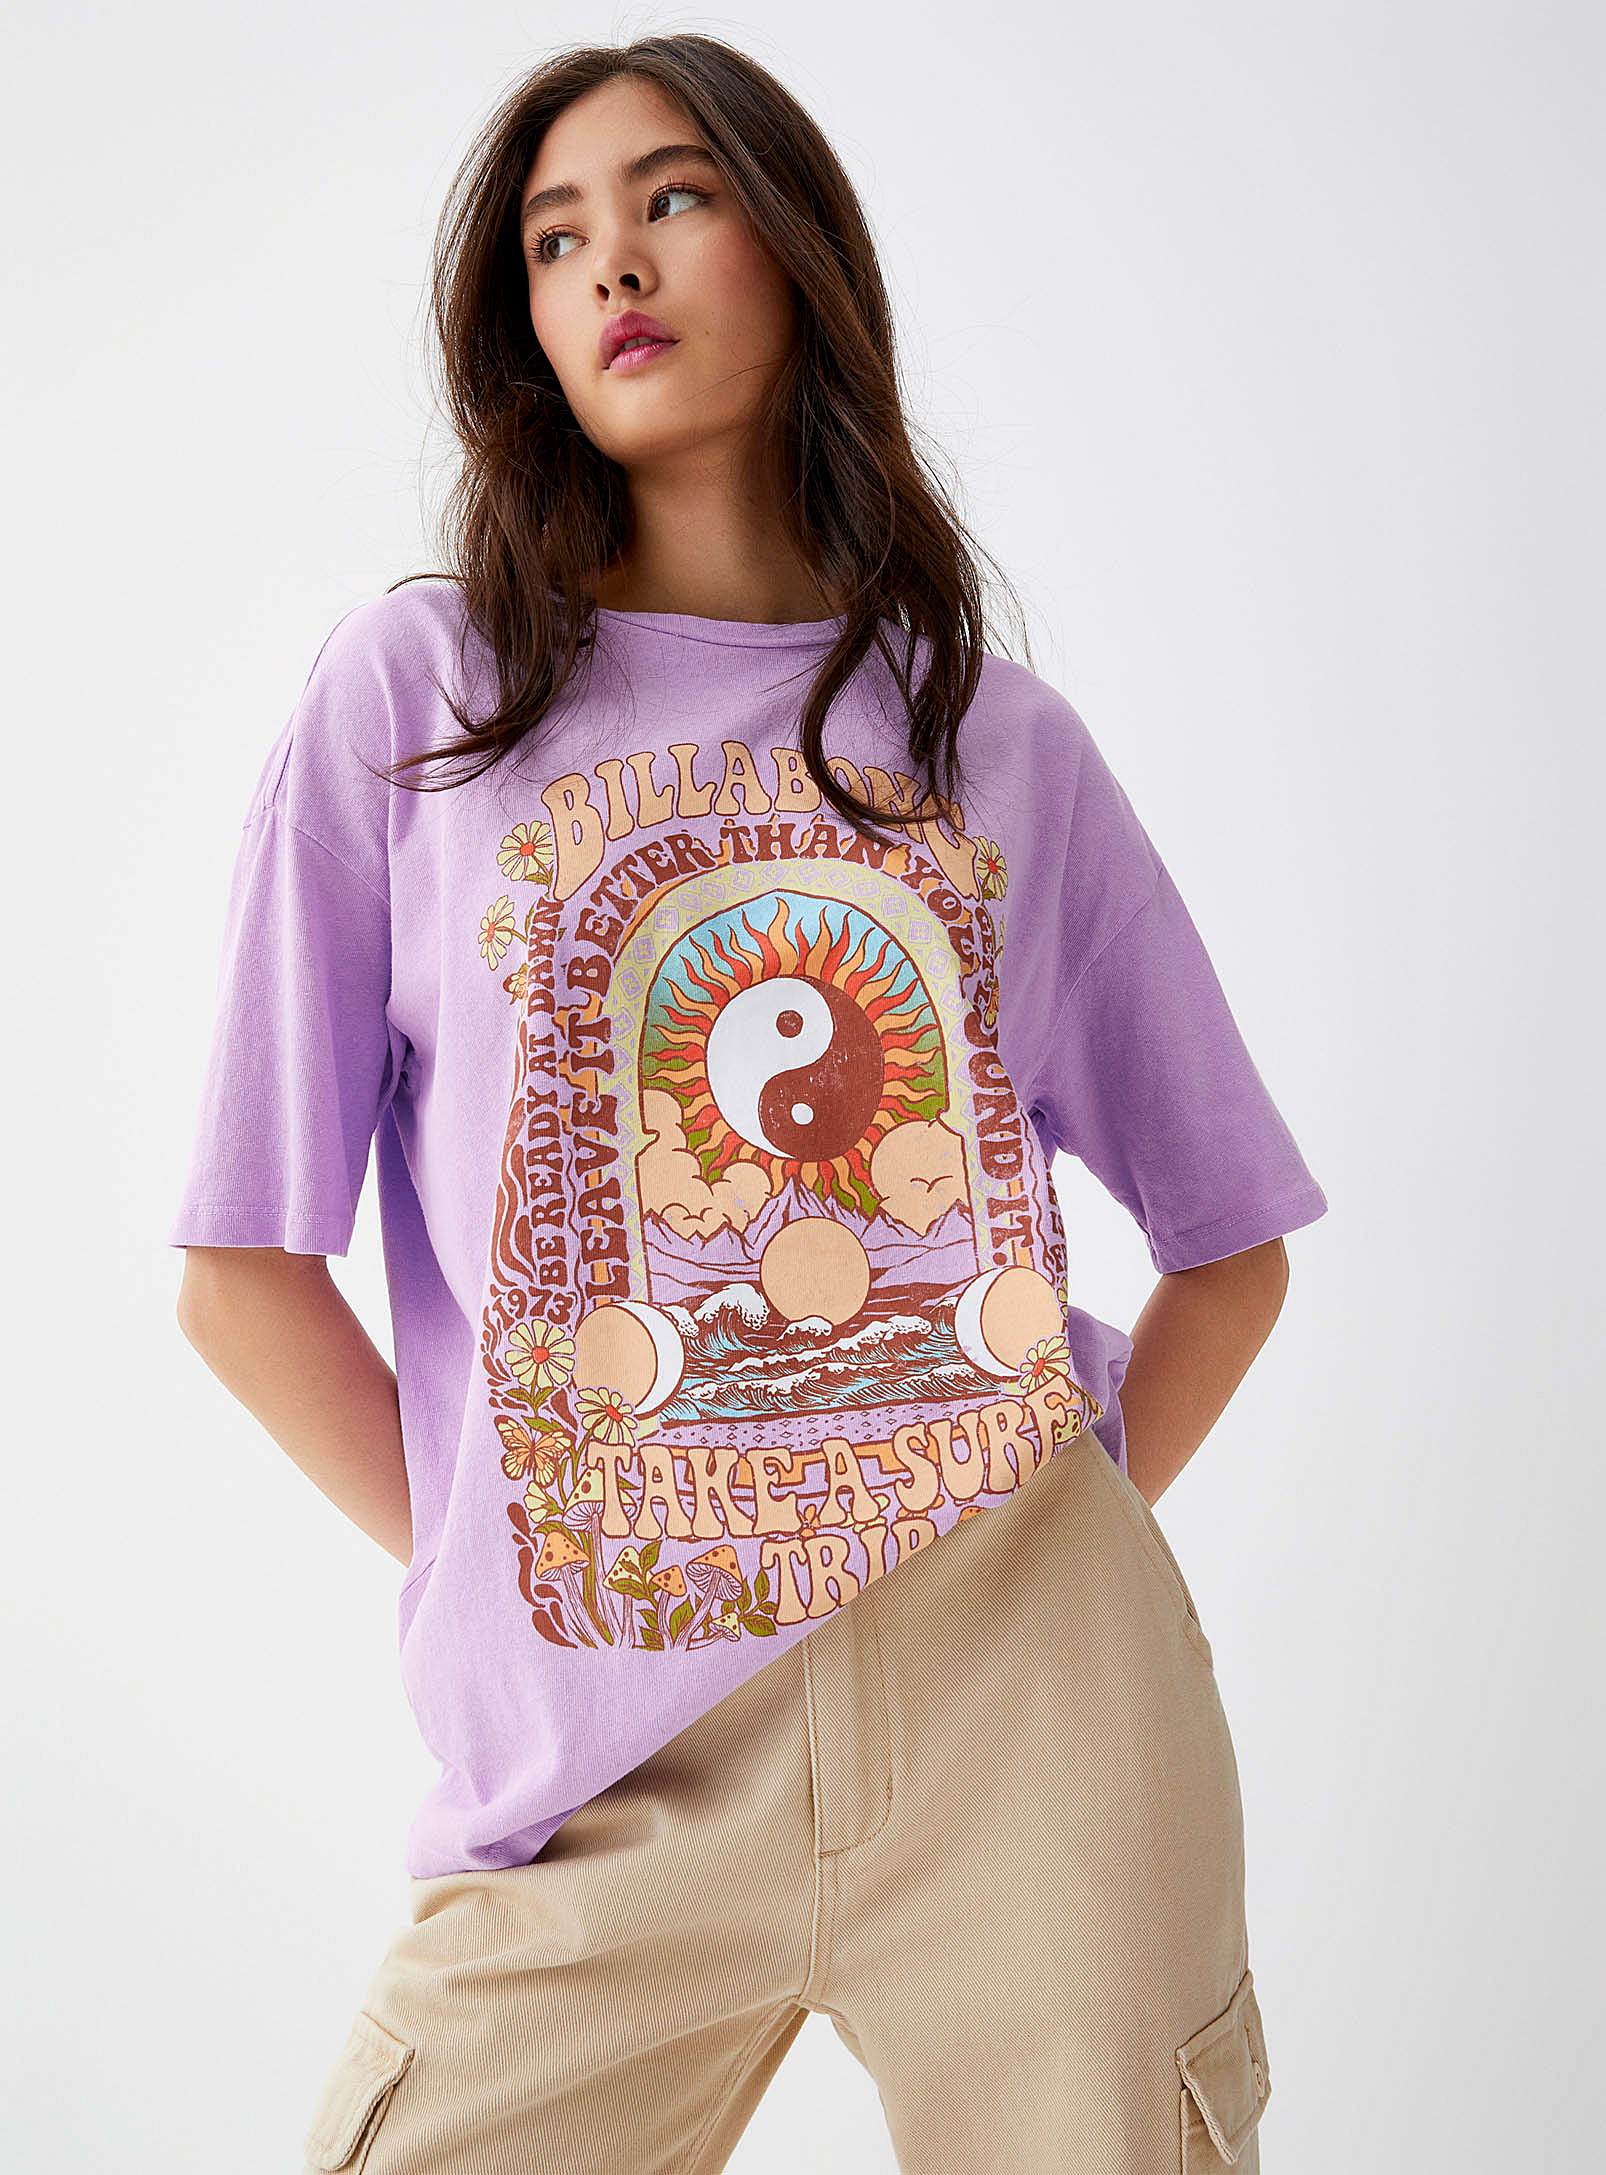 Billabong - Women's Yin and Yang purple Tee Shirt